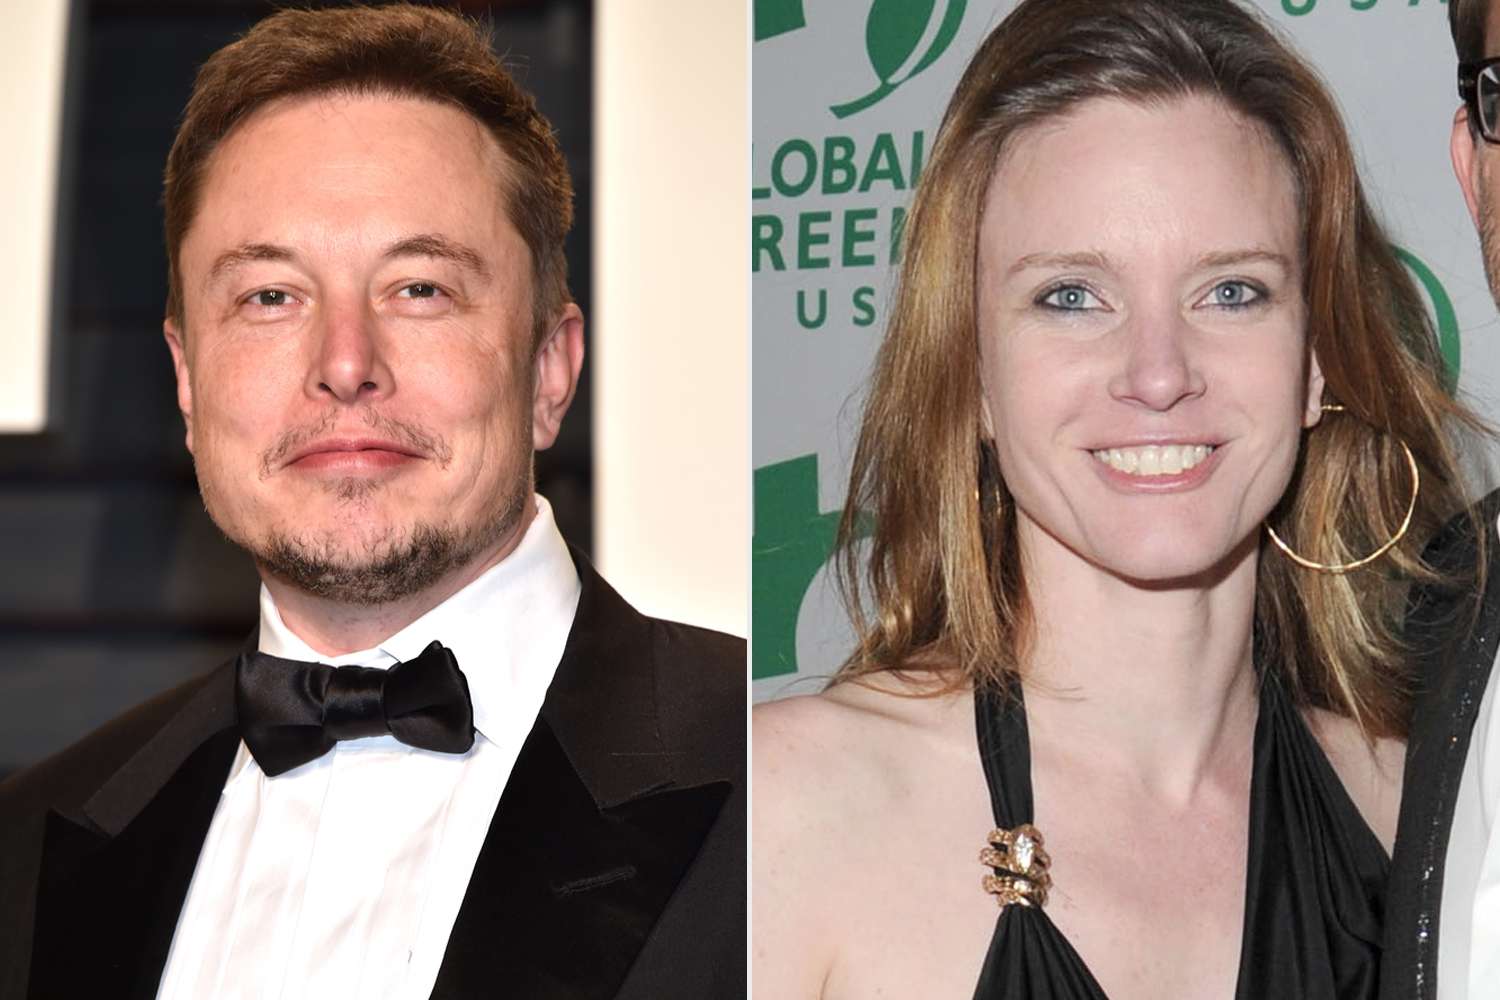 Wer ist Justine Musk? & ihre Beziehung zu Elon Musk (erklärt)